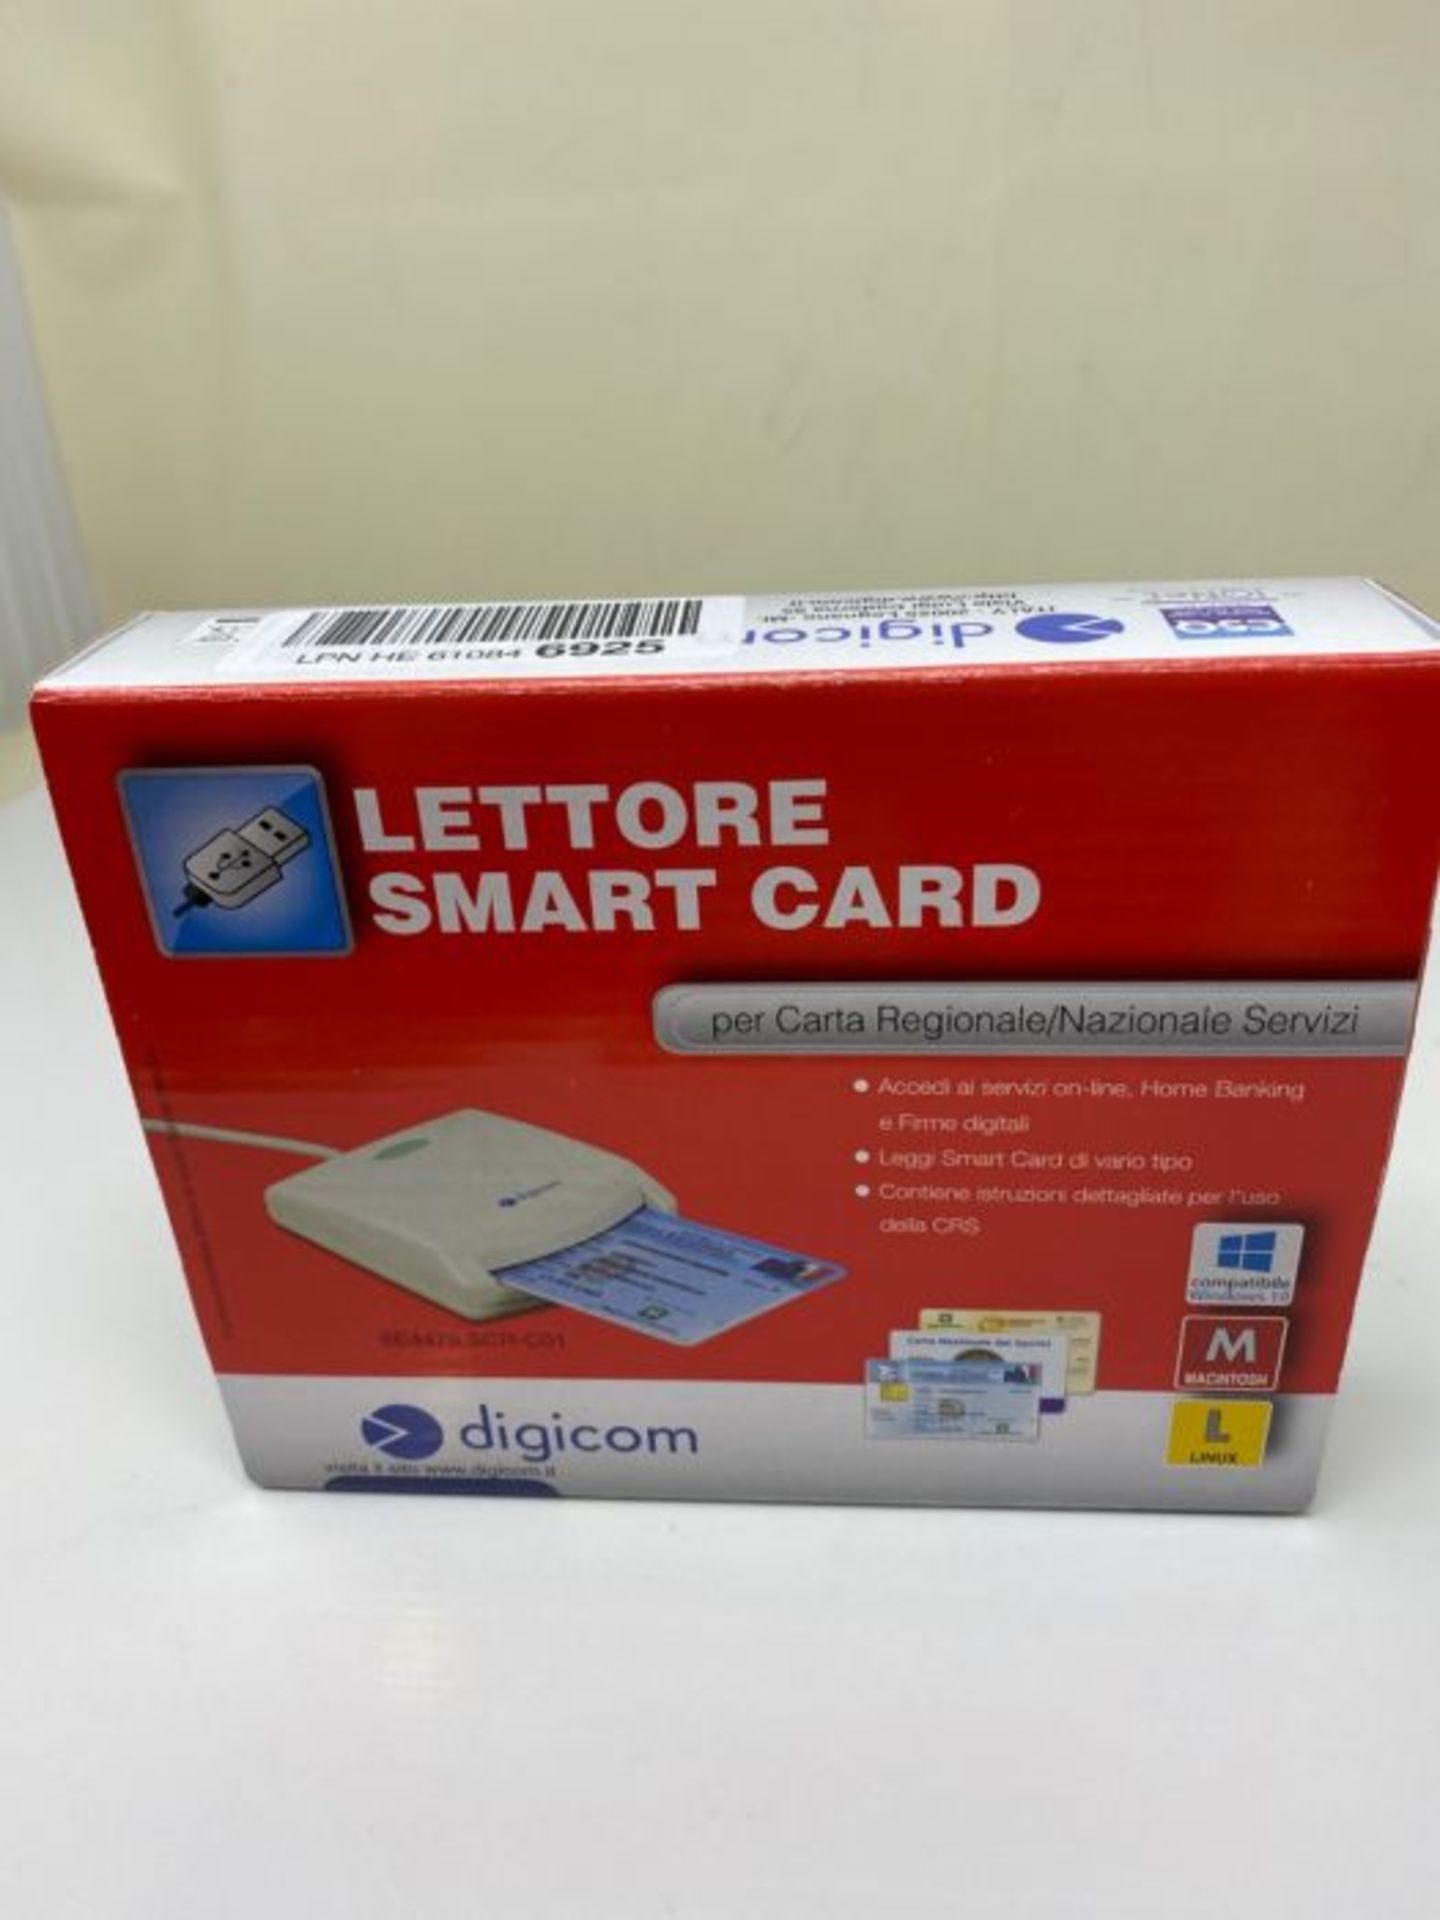 Digicom 8E4479 lettore di smart card CNS & CRS - Image 2 of 3